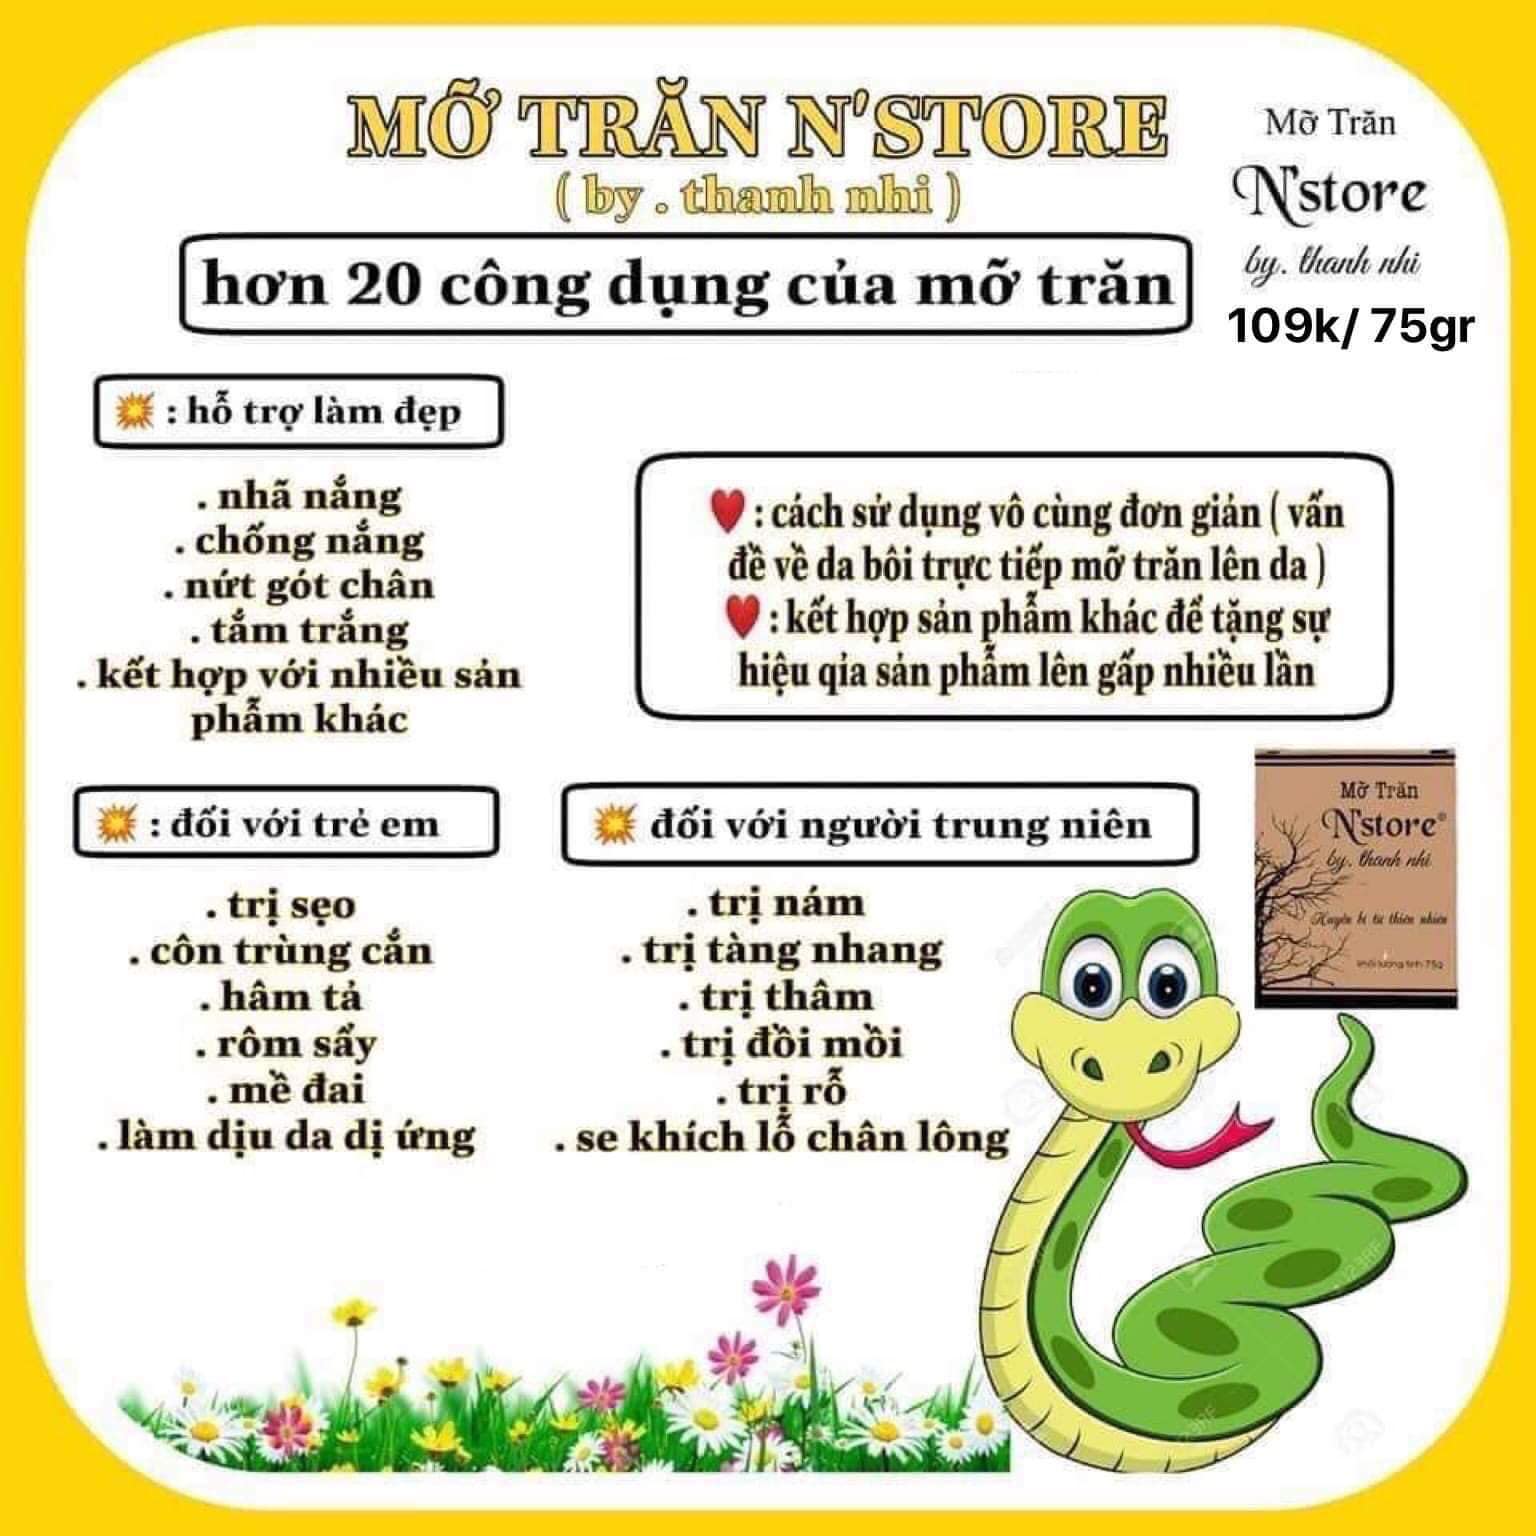 Mỡ Trăn Nguyên Chất 100% N Store By Thanh Nhi - 8938512905013